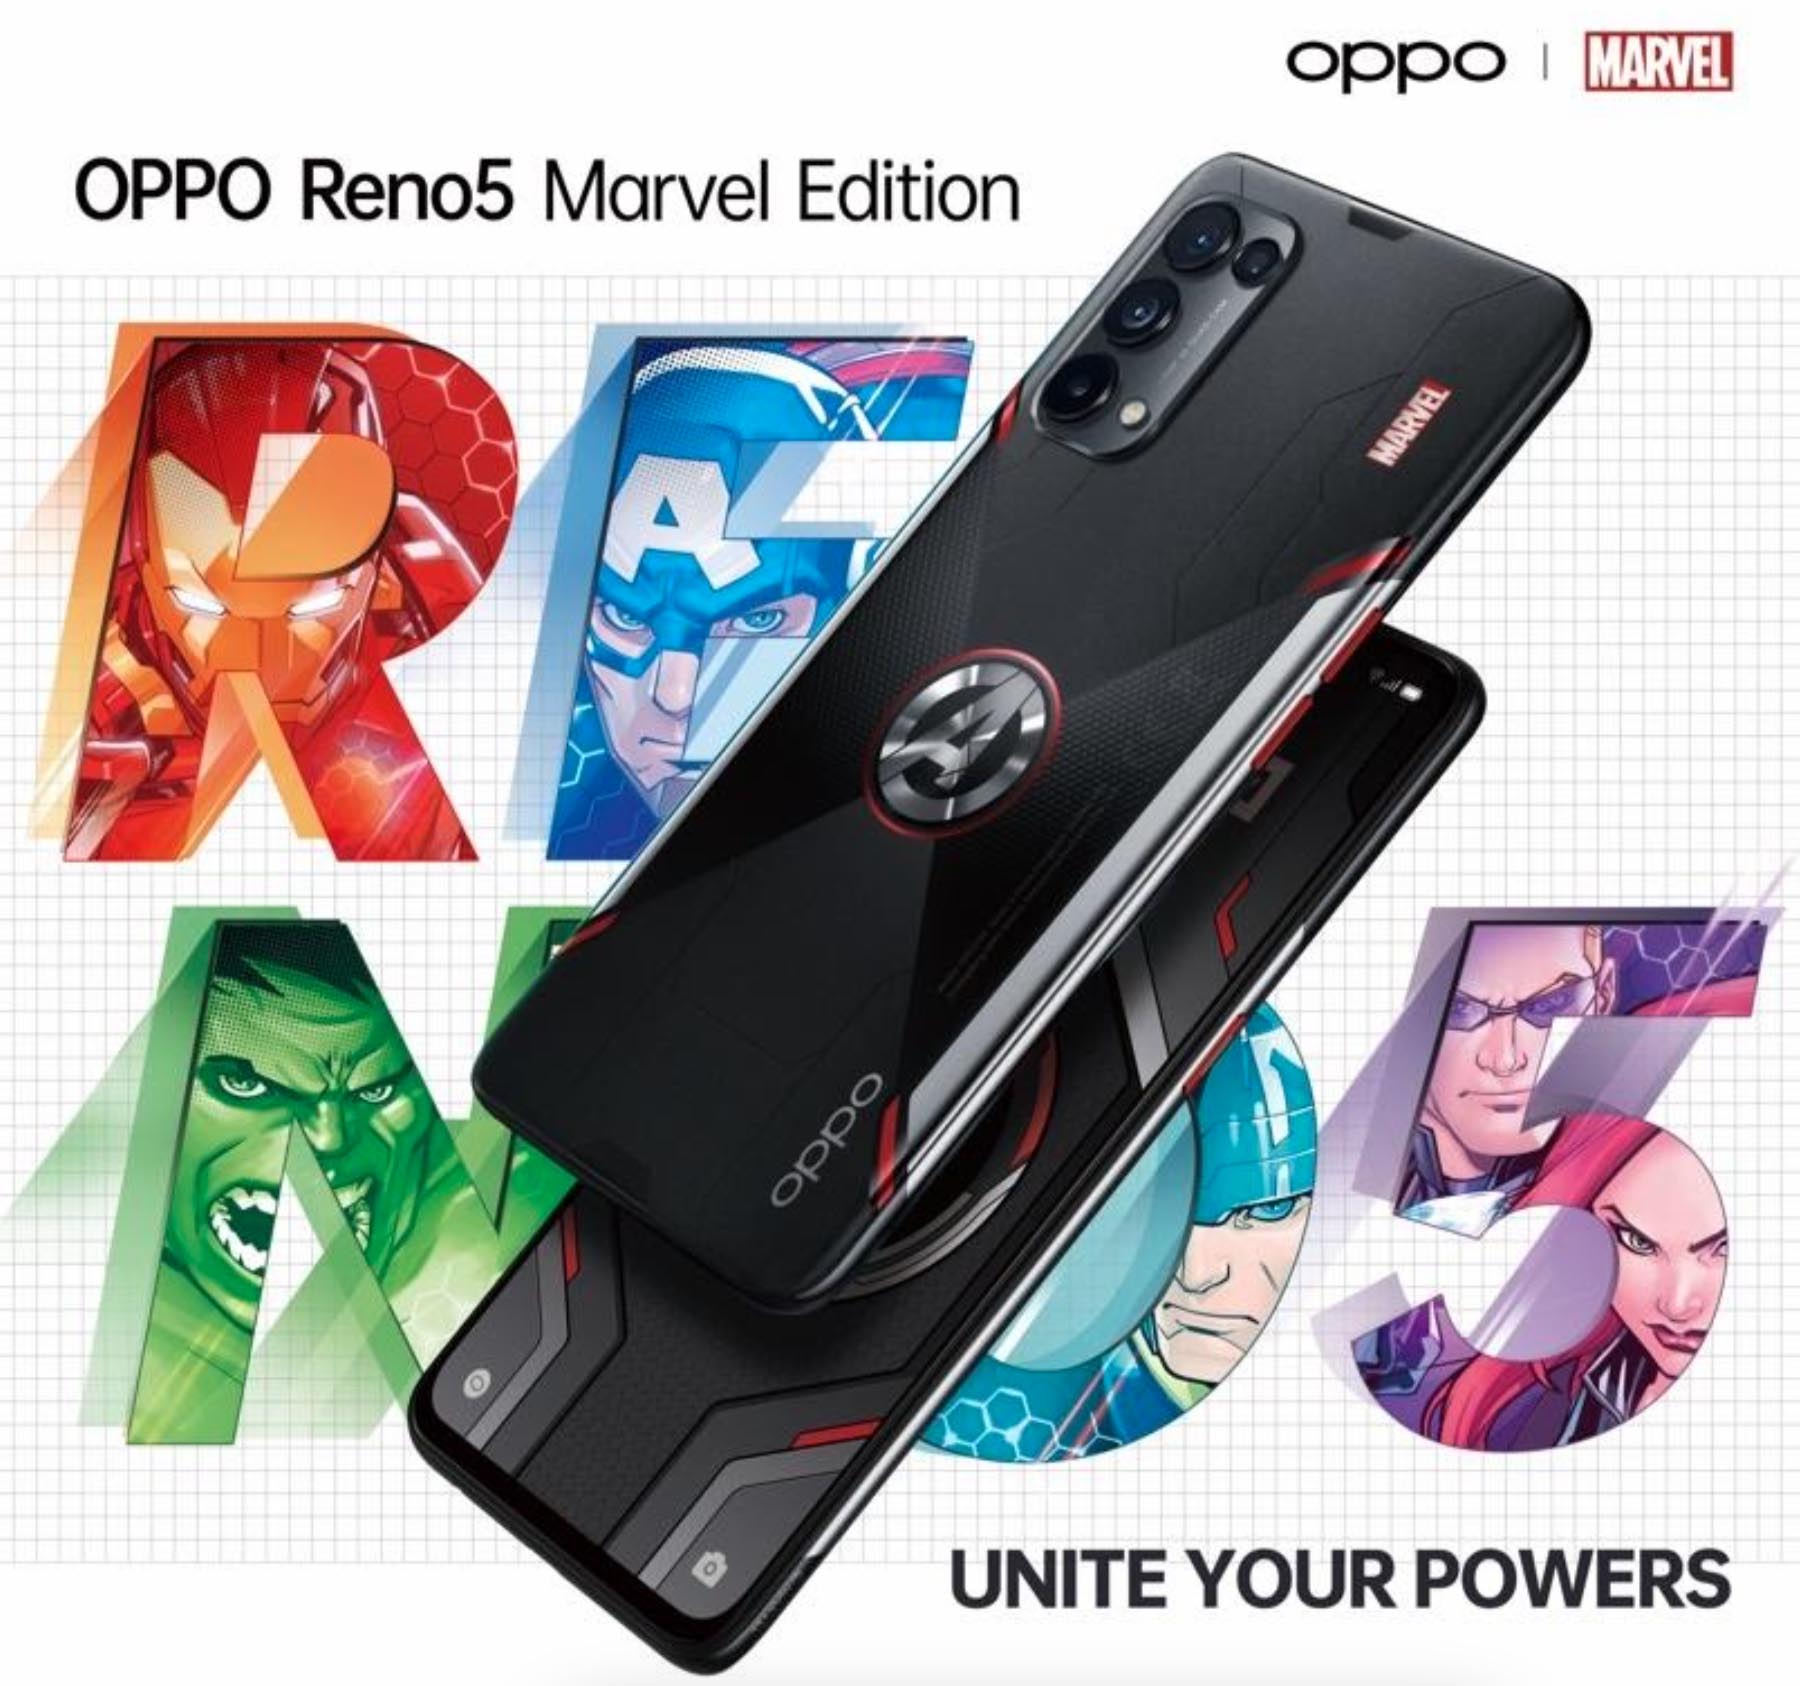 OPPO chính thức giới thiệu phiên bản giới hạn Reno5 Marvel Edition tại Việt Nam